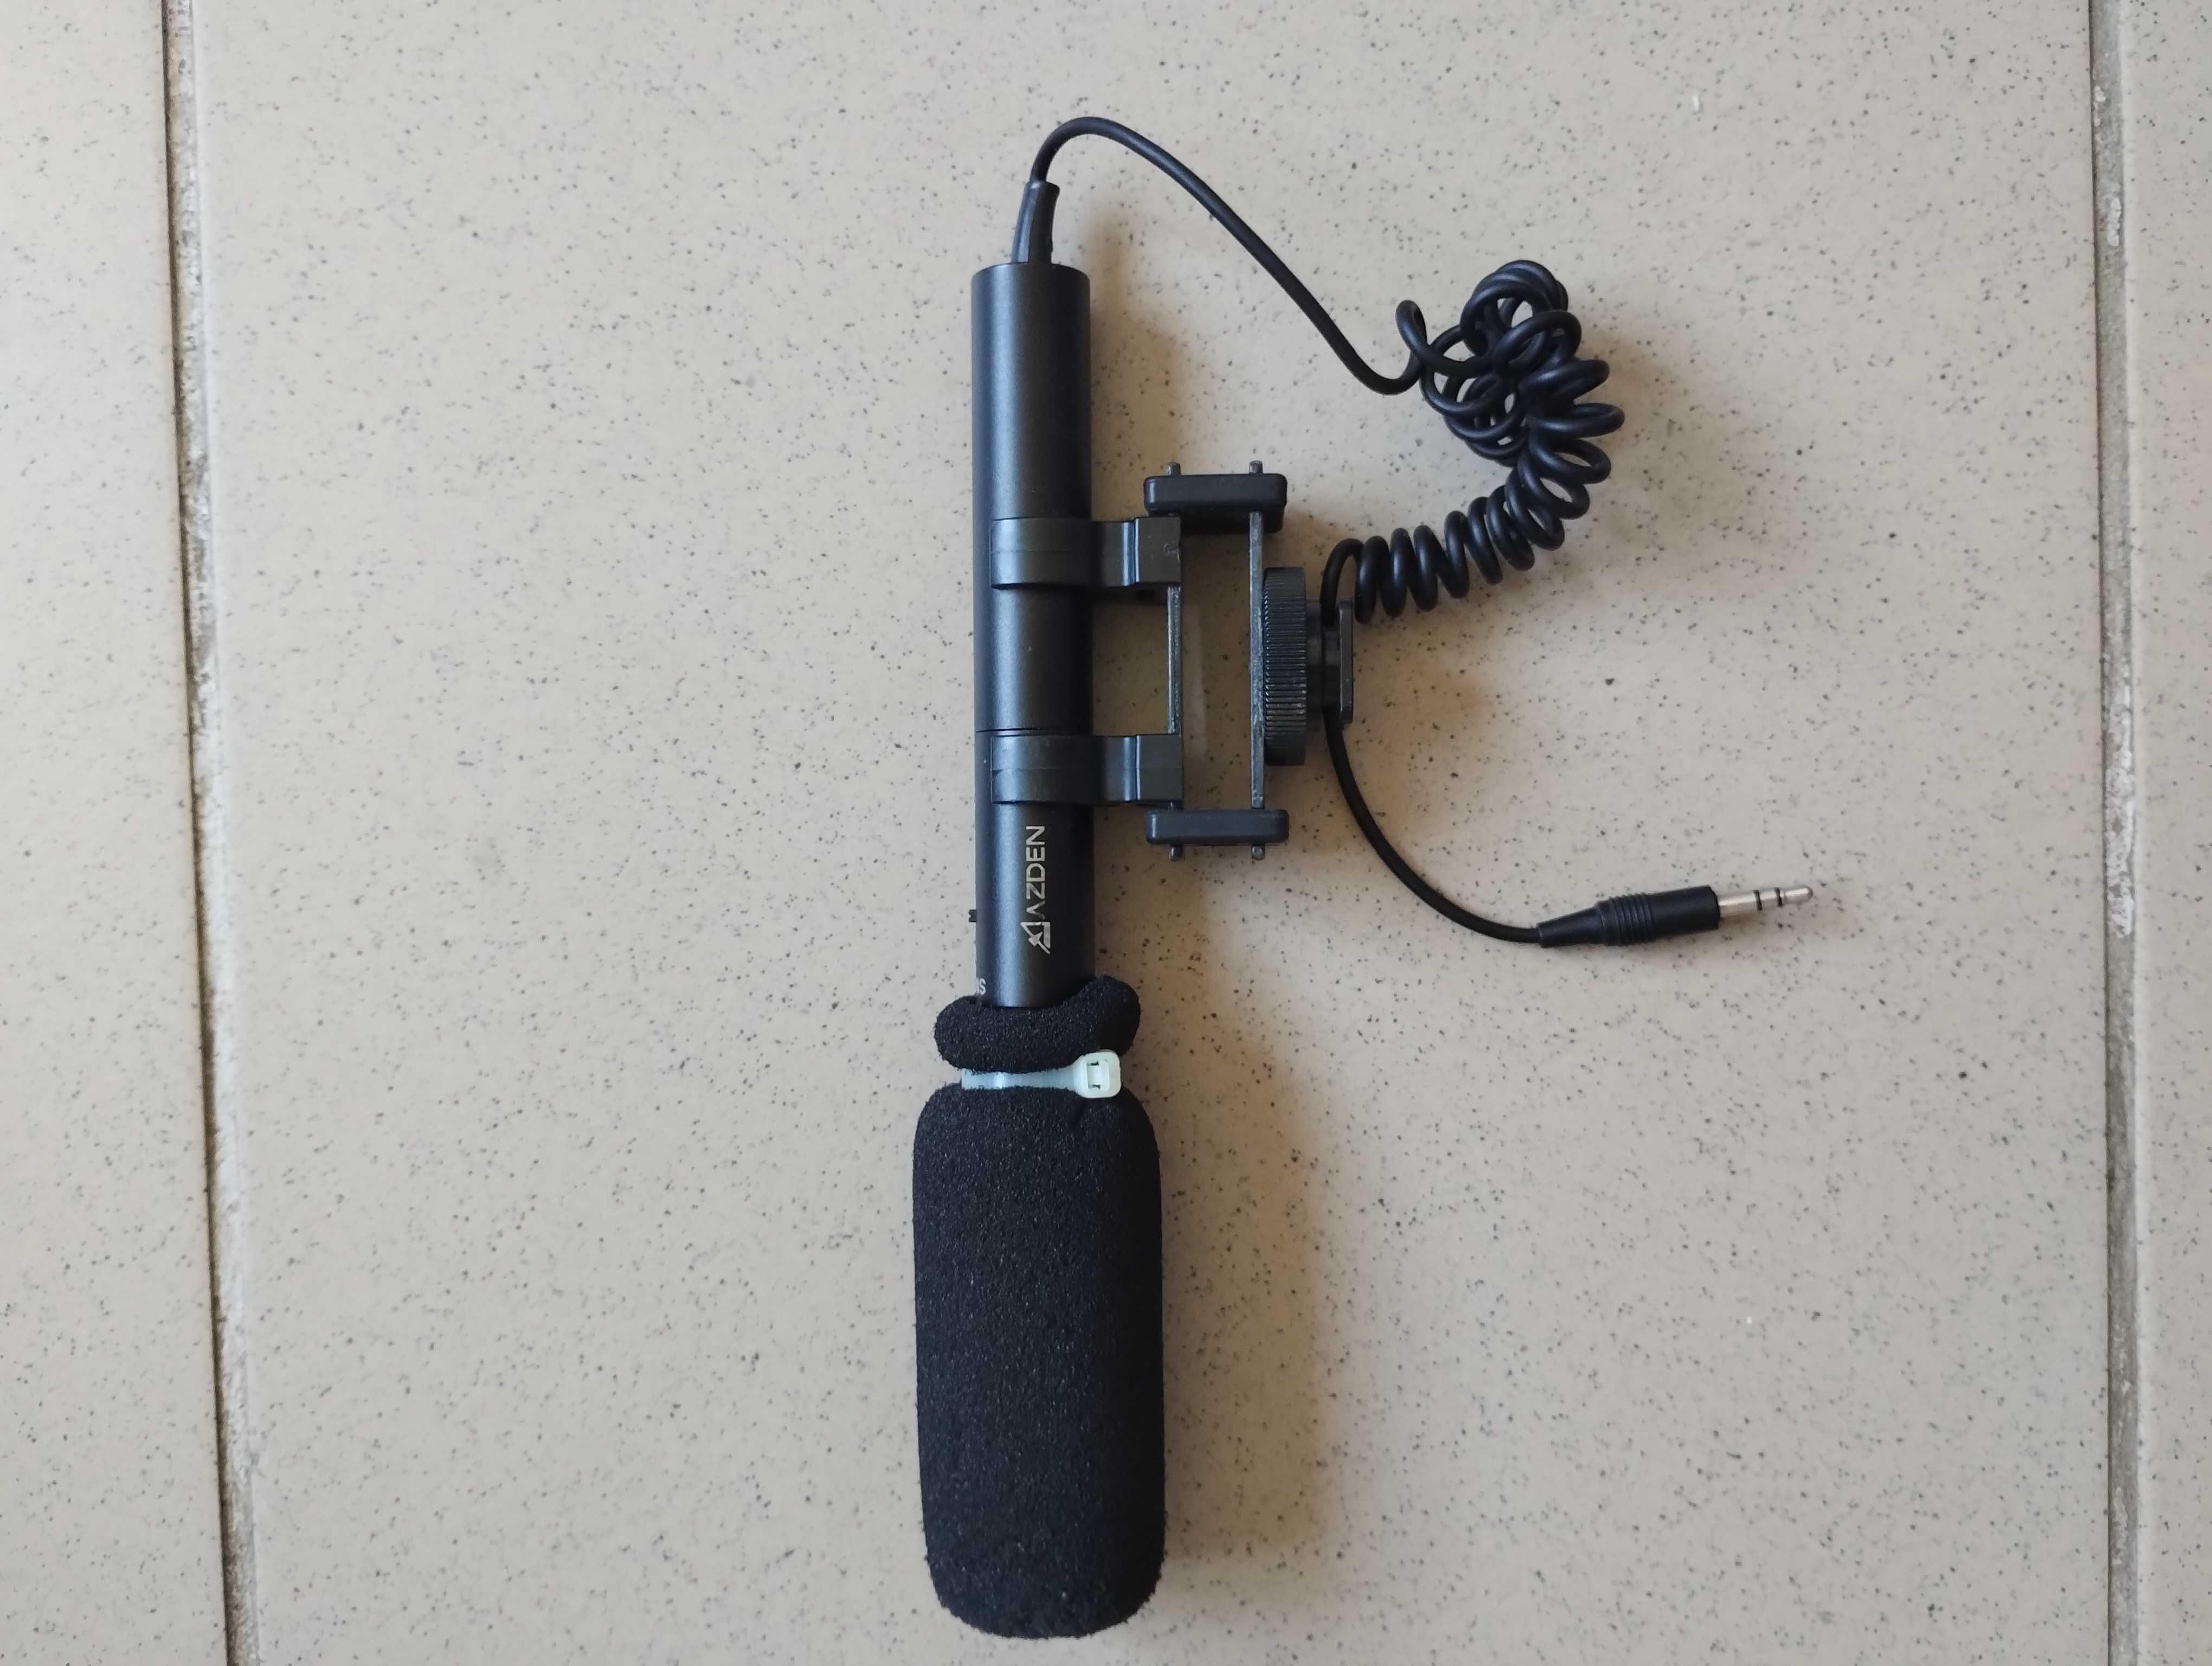 Microfon AZDEN SMX - 10, cu un mic defect